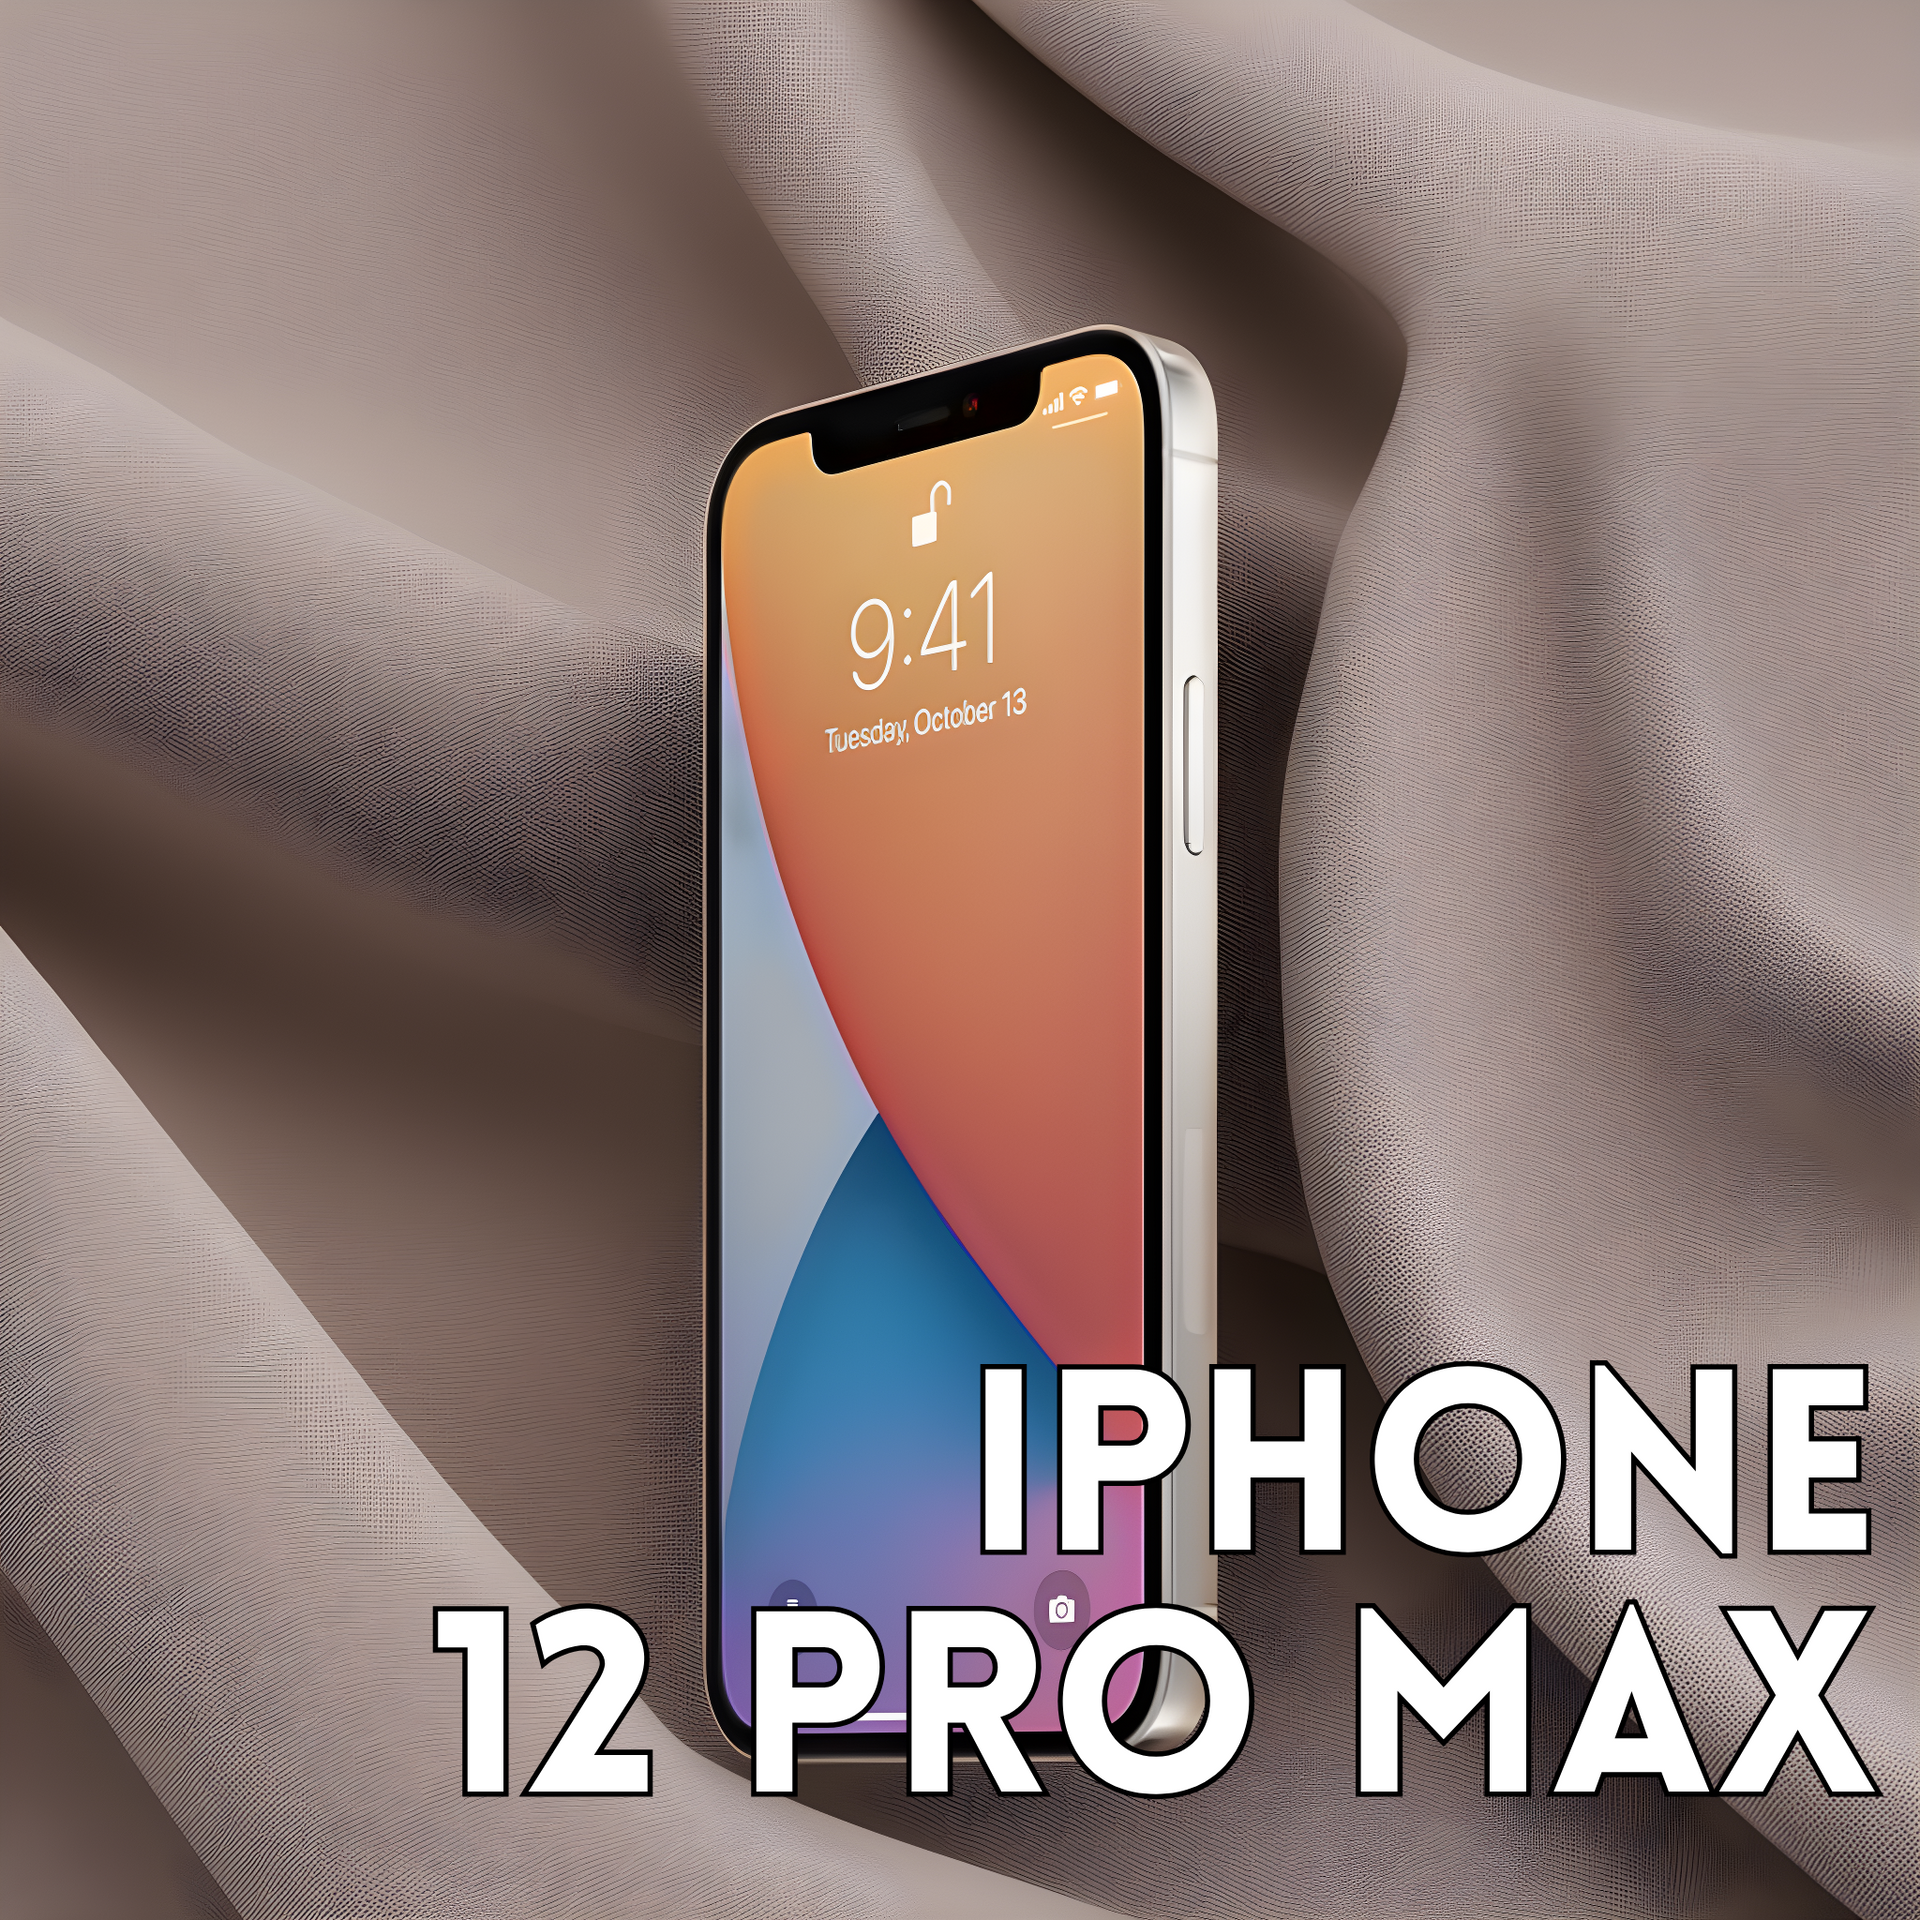 Cambio de pantalla iPhone 11 Pro Max a domicilio en Madrid